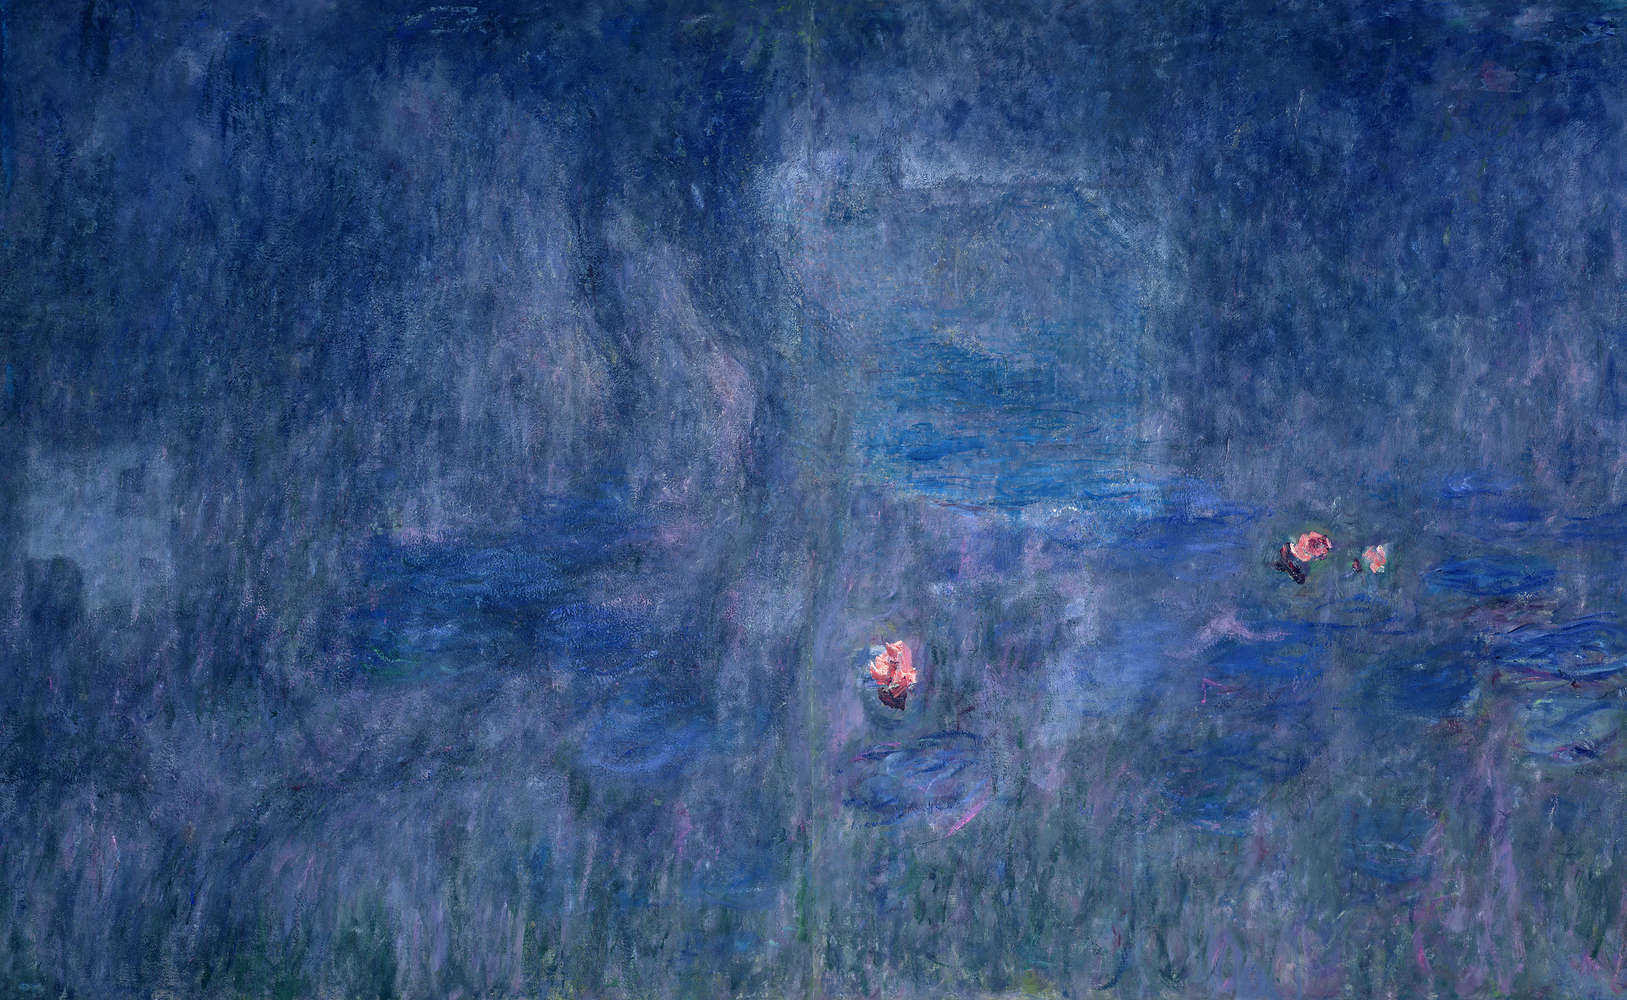             Papier peint "Nymphéas : reflet des arbres" de Claude Monet
        